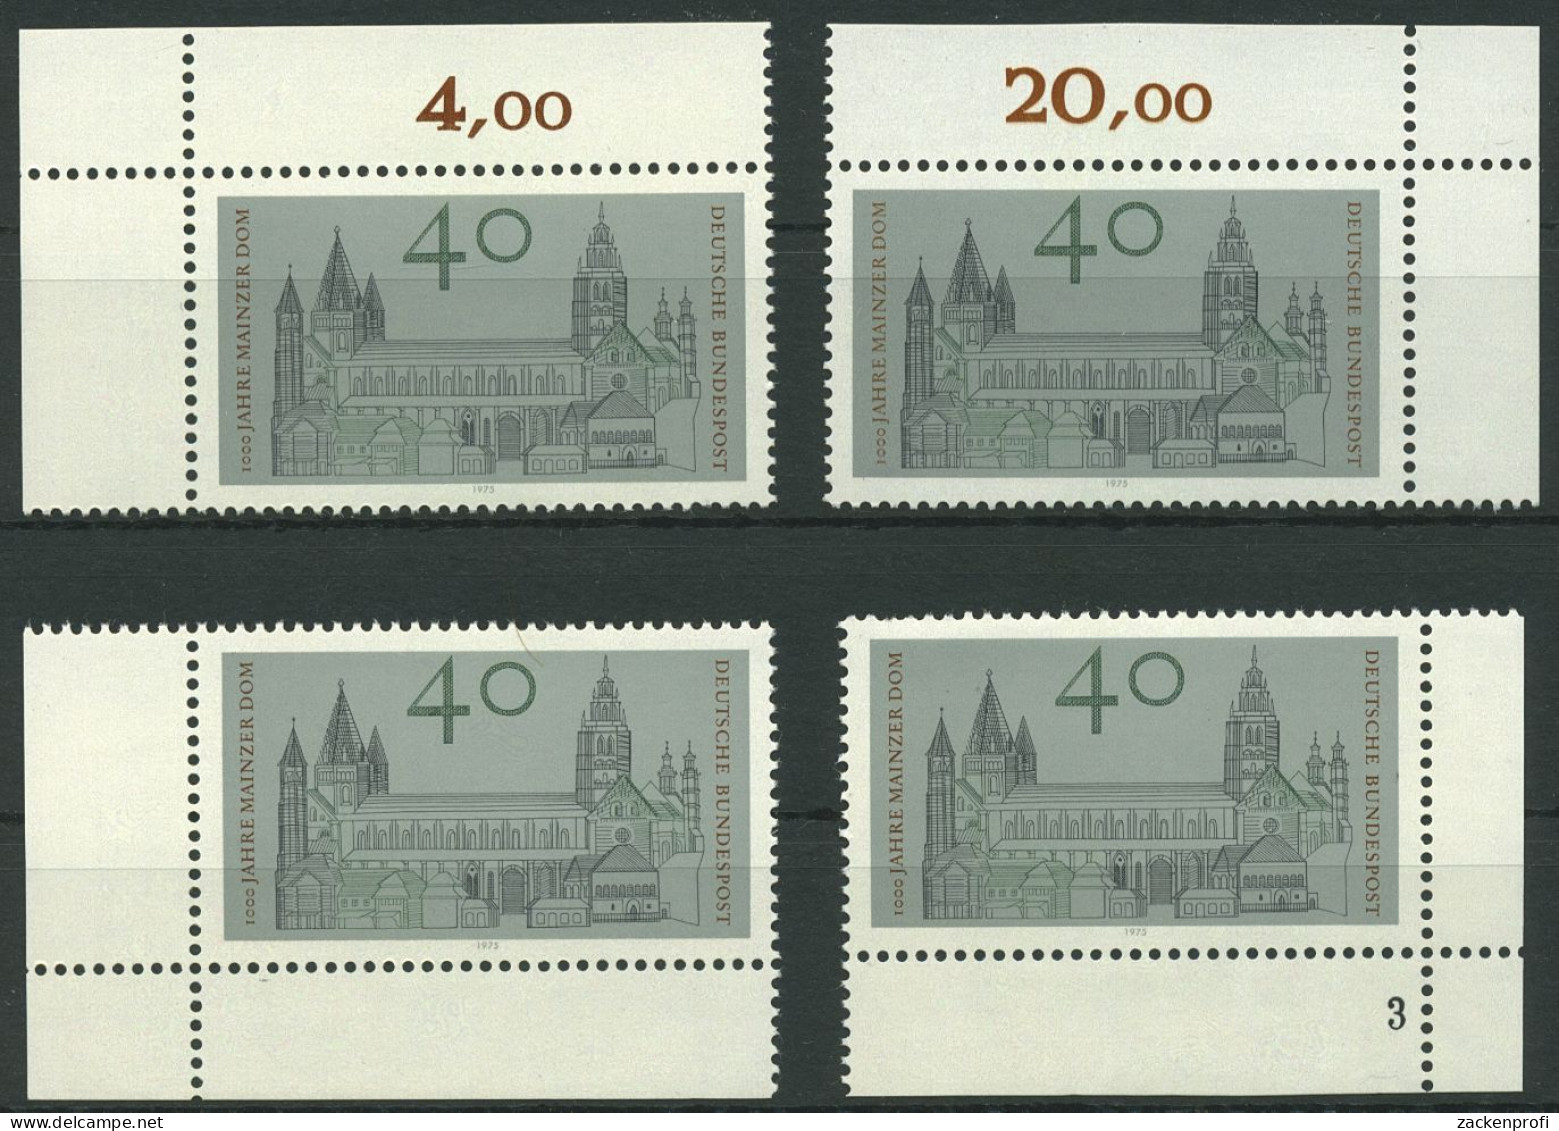 Bund 1975 Mainzer Dom 845 Alle 4 Ecken Postfrisch (E933) - Nuovi